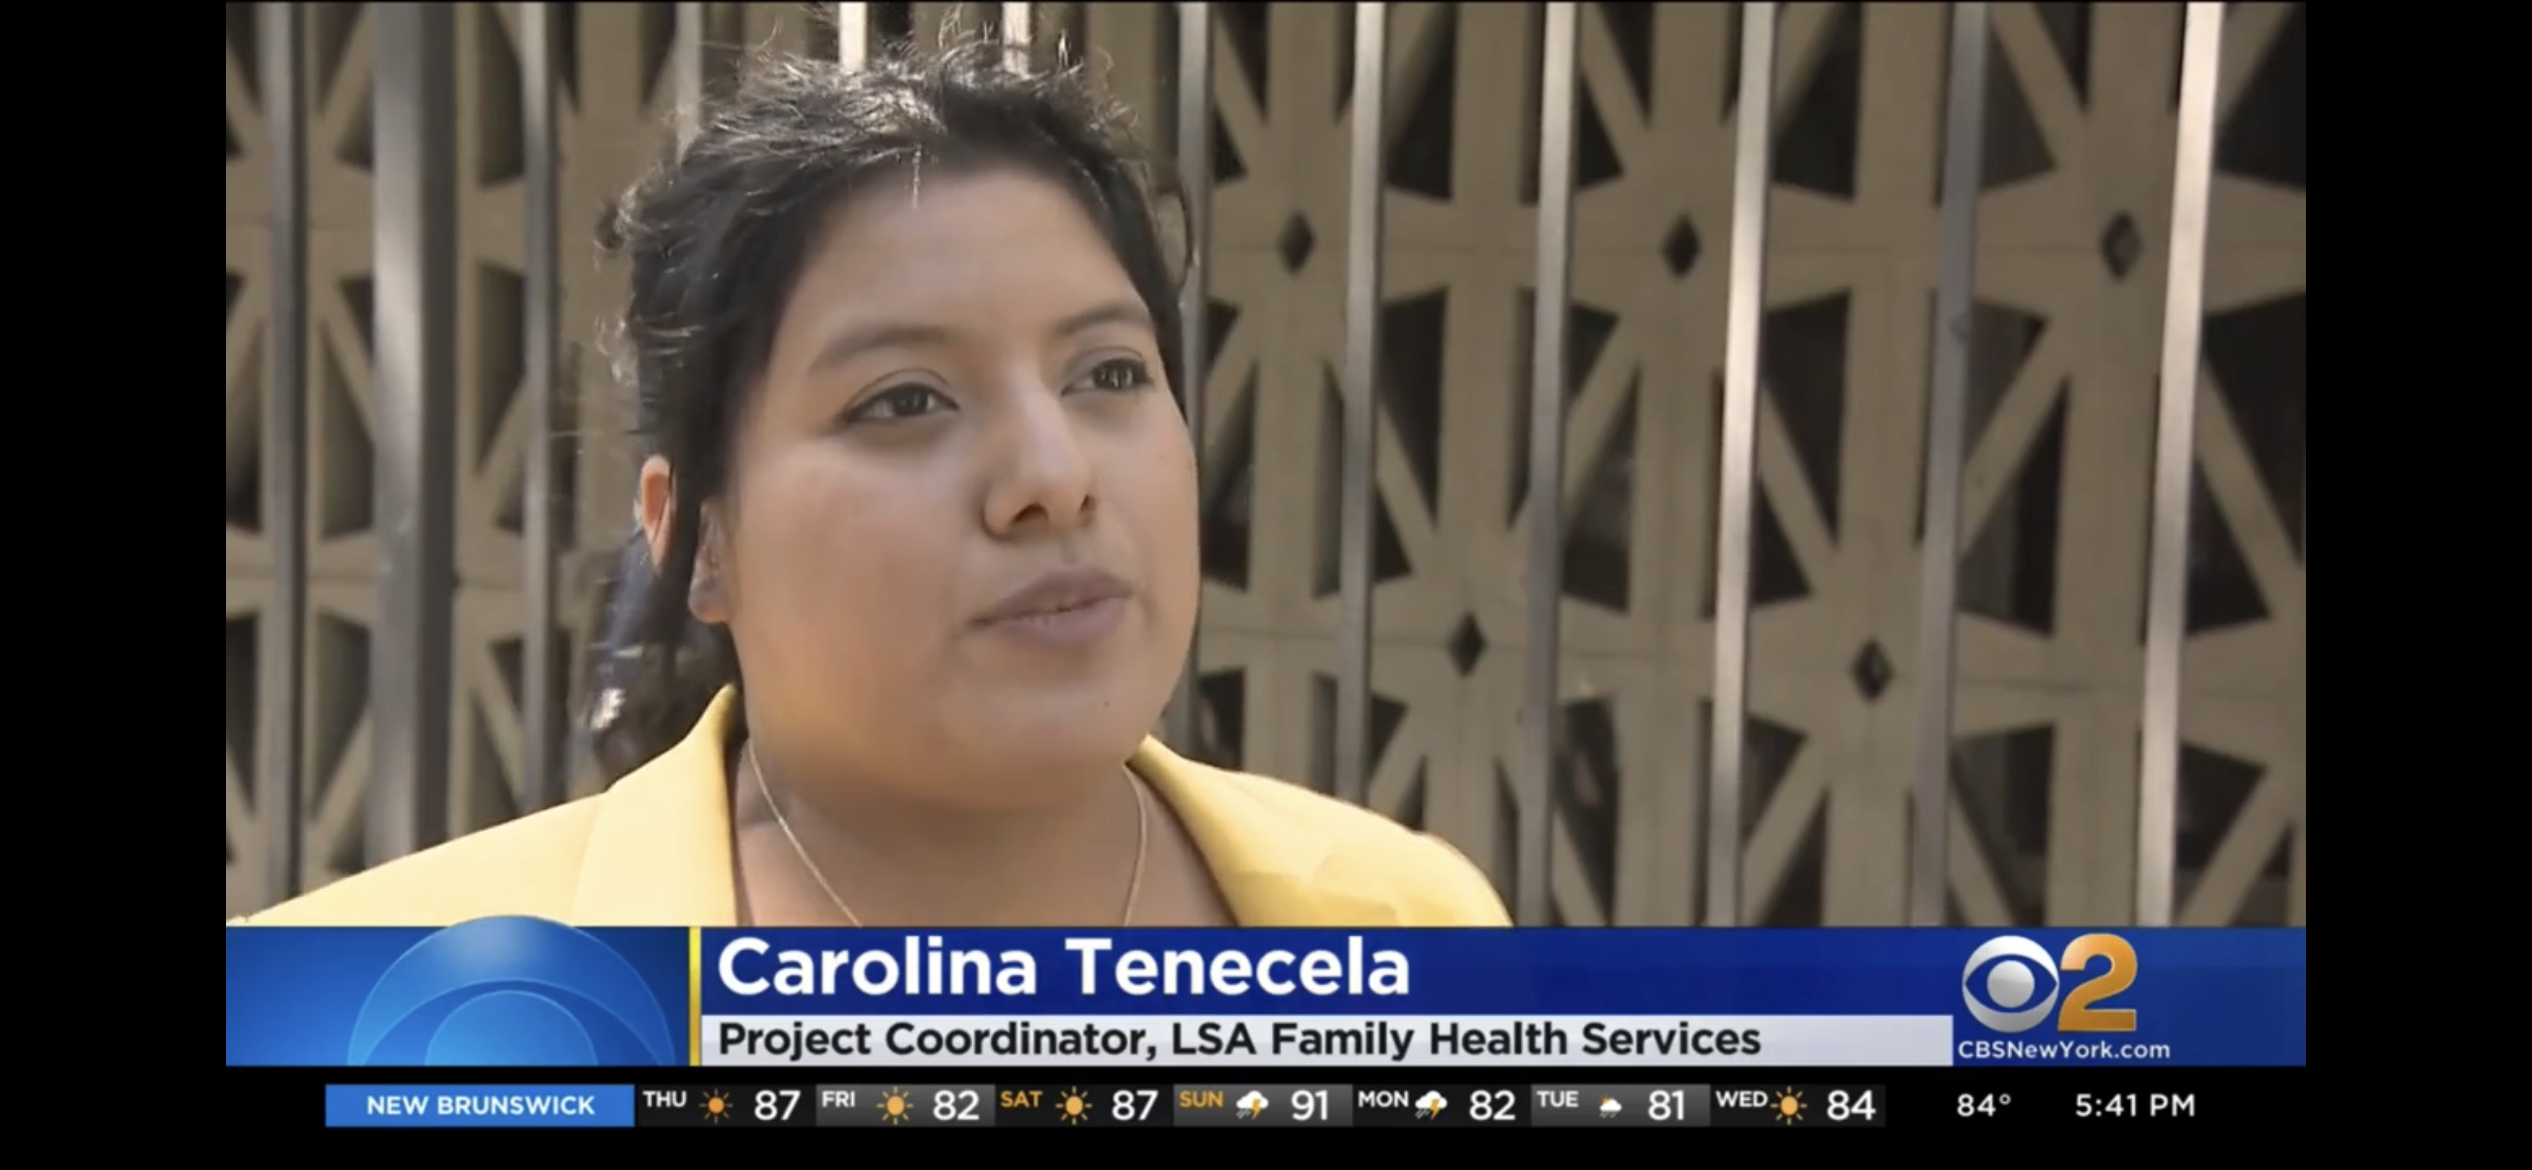 NEWS FEATURE: LSA's LIFE Project Coordinator Carolina Tenecela